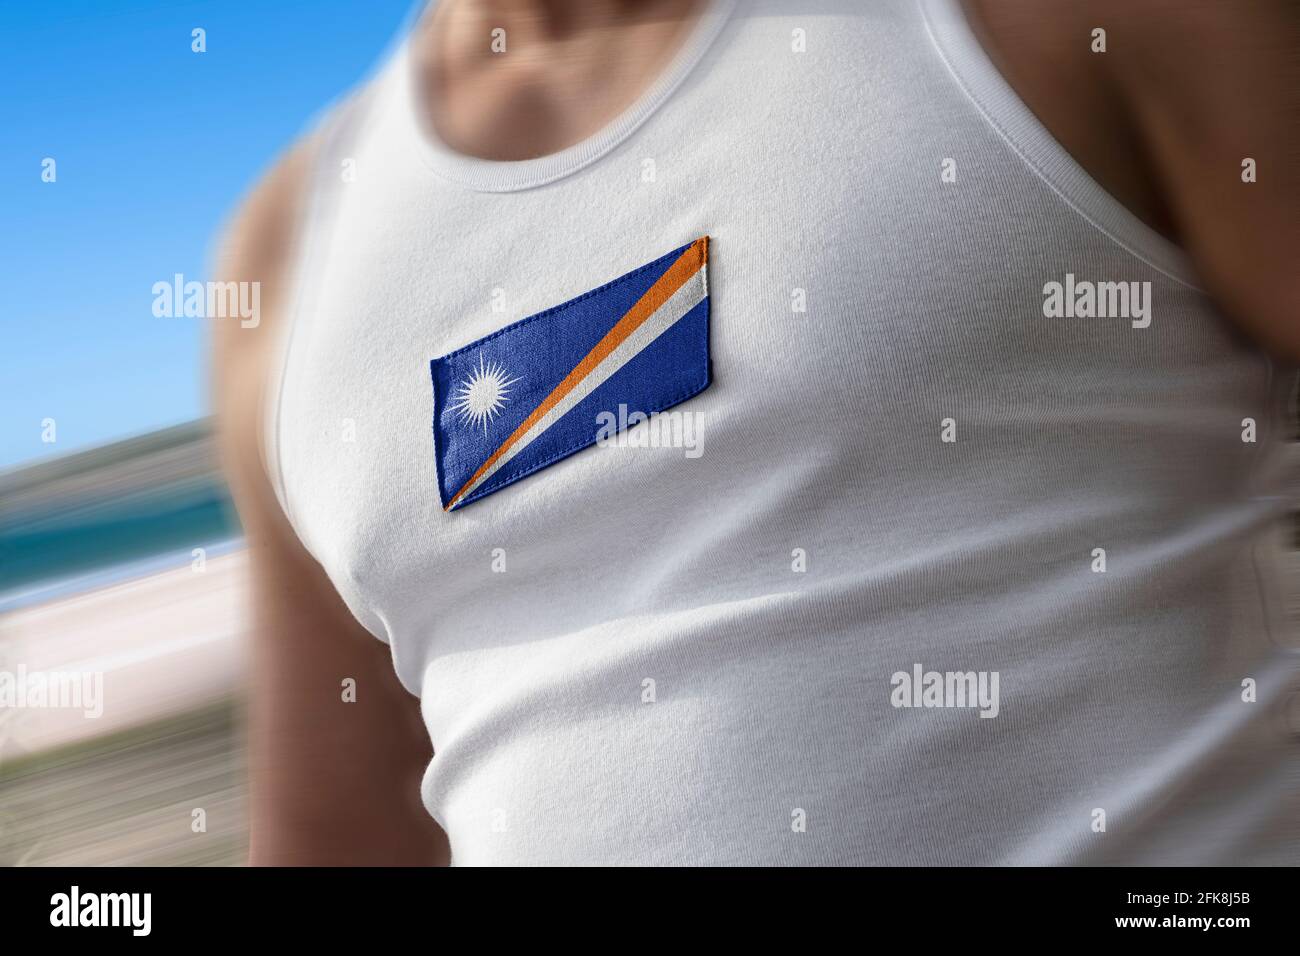 La bandera nacional de las Islas Marshall en el pecho del atleta Foto de stock